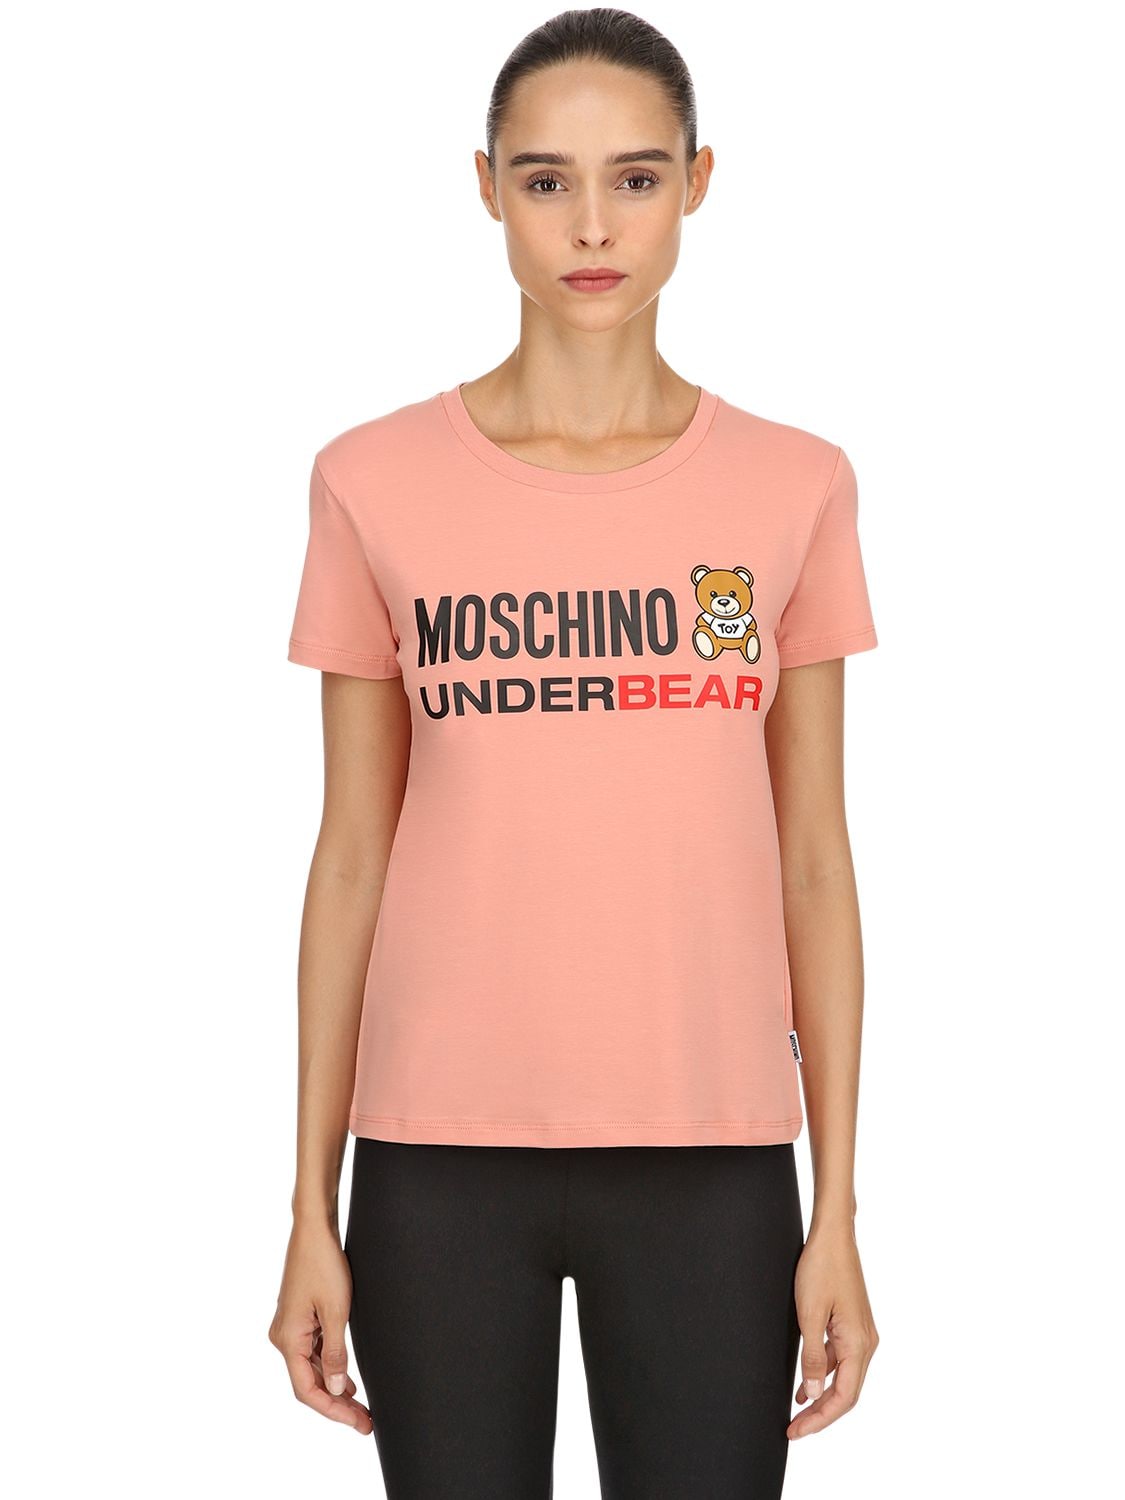 Moschino Underwear Underbear Cotton Jersey T-shirt In Pink